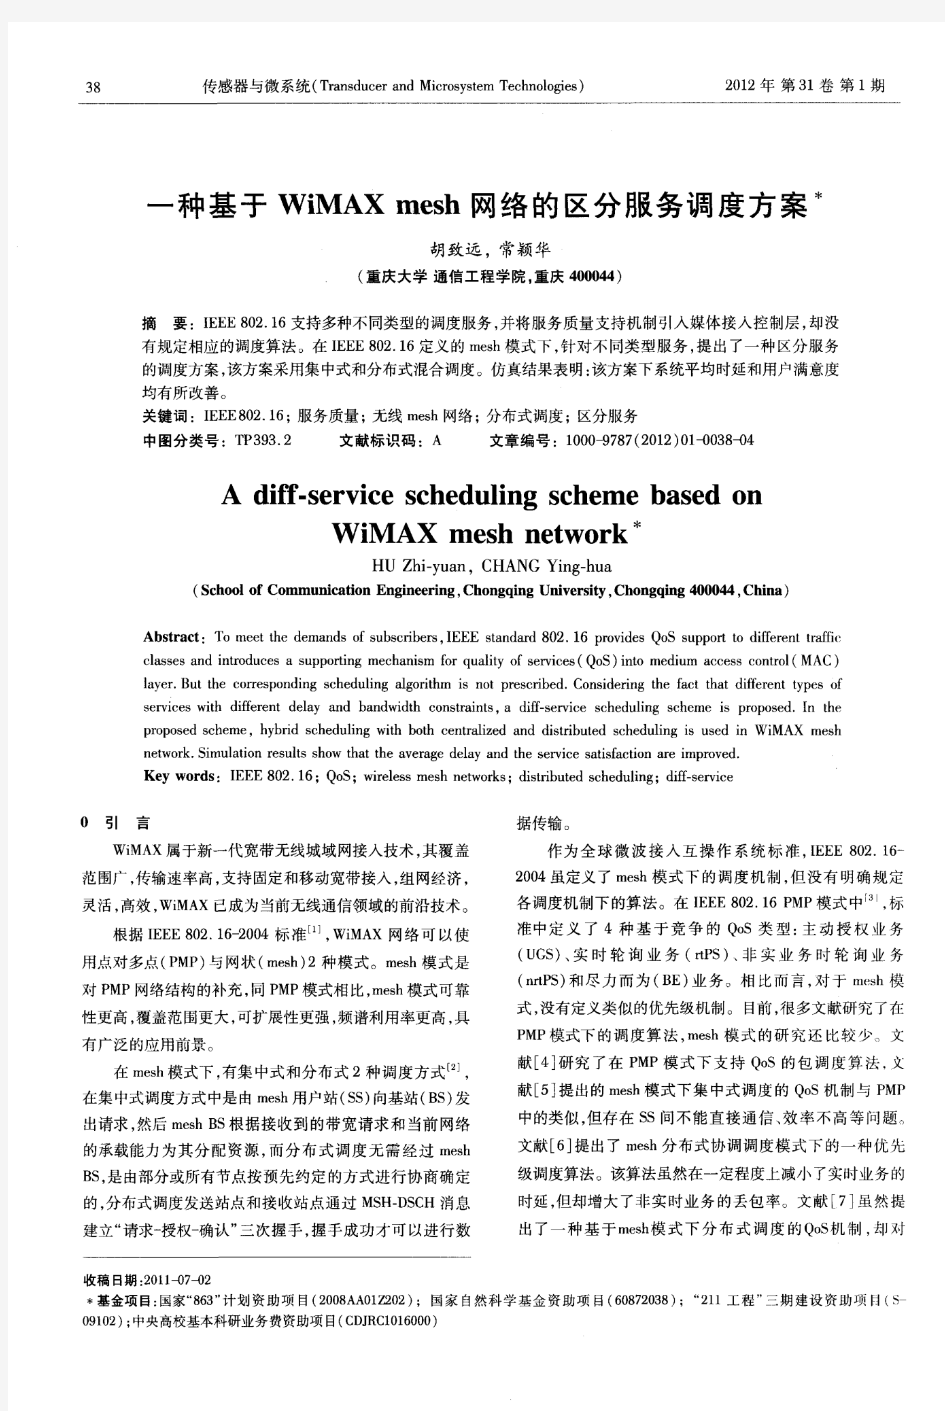 一种基于WiMAX mesh网络的区分服务调度方案